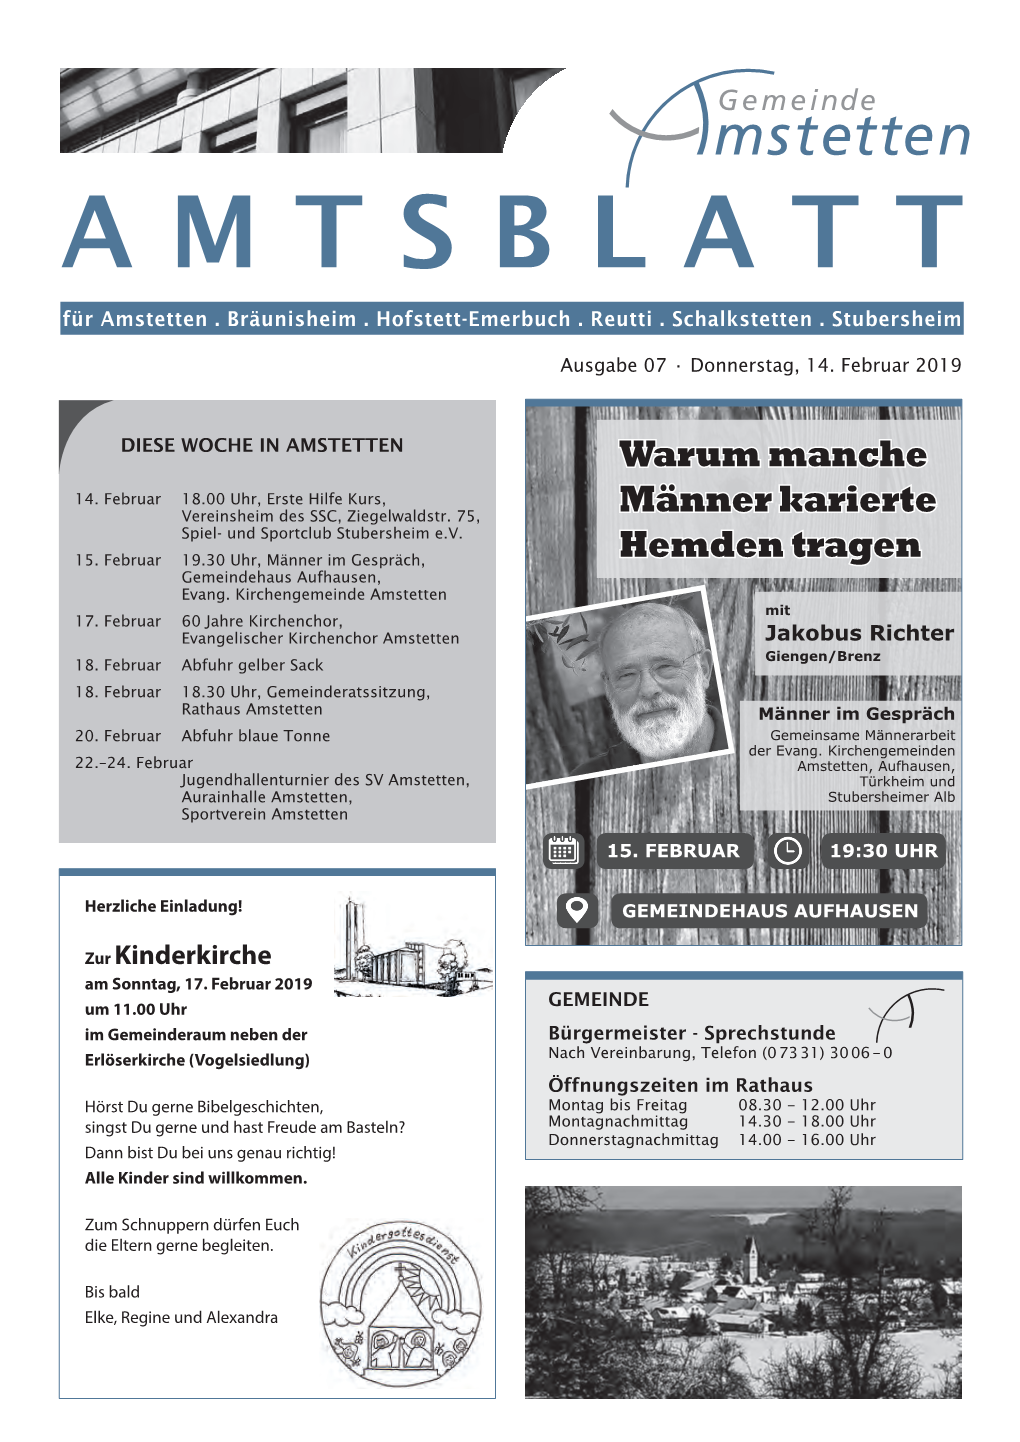 Amtsblatt a M T S B L A